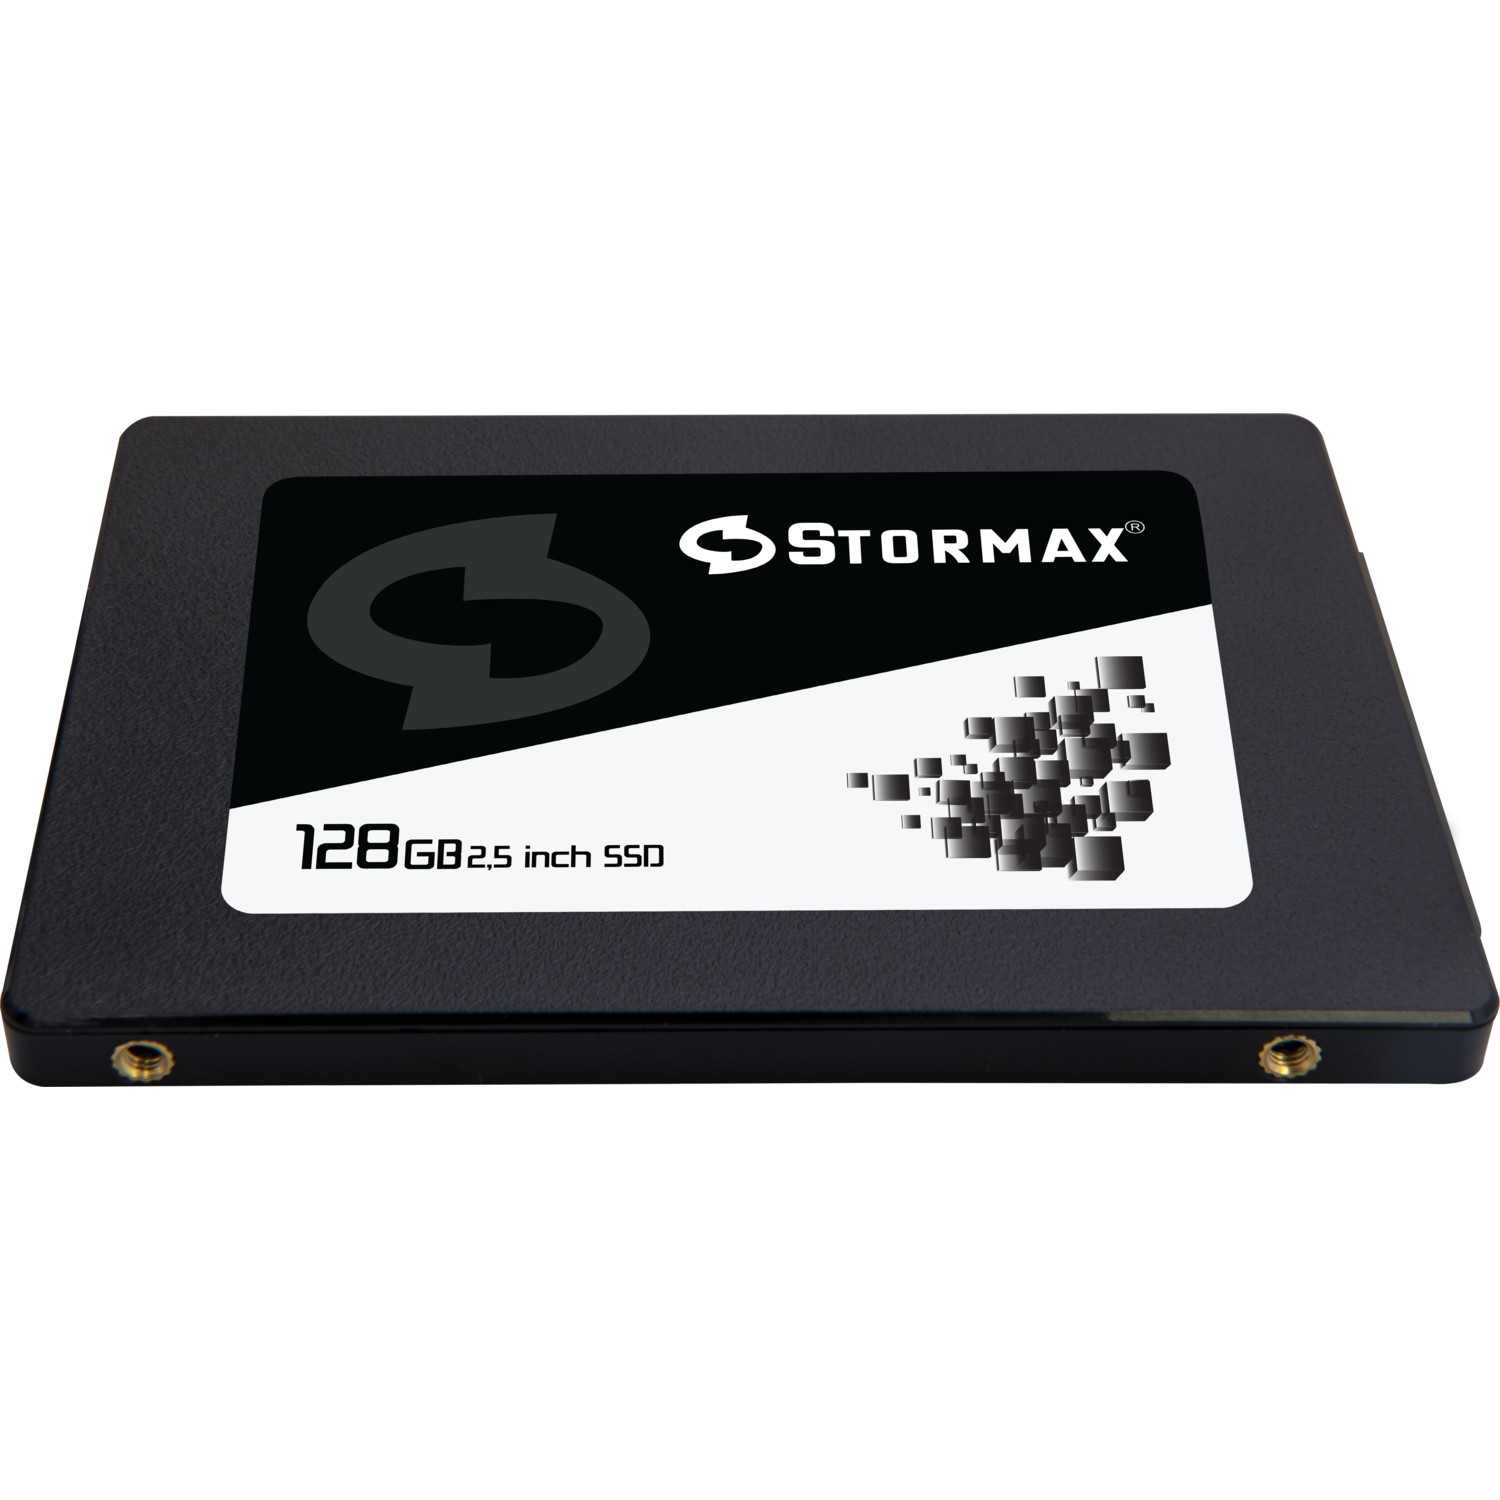 STORMAX BLACK 128GB 550/530MB/s 2.5" SATA3 SSD SMX-SSD30BLCK/128G